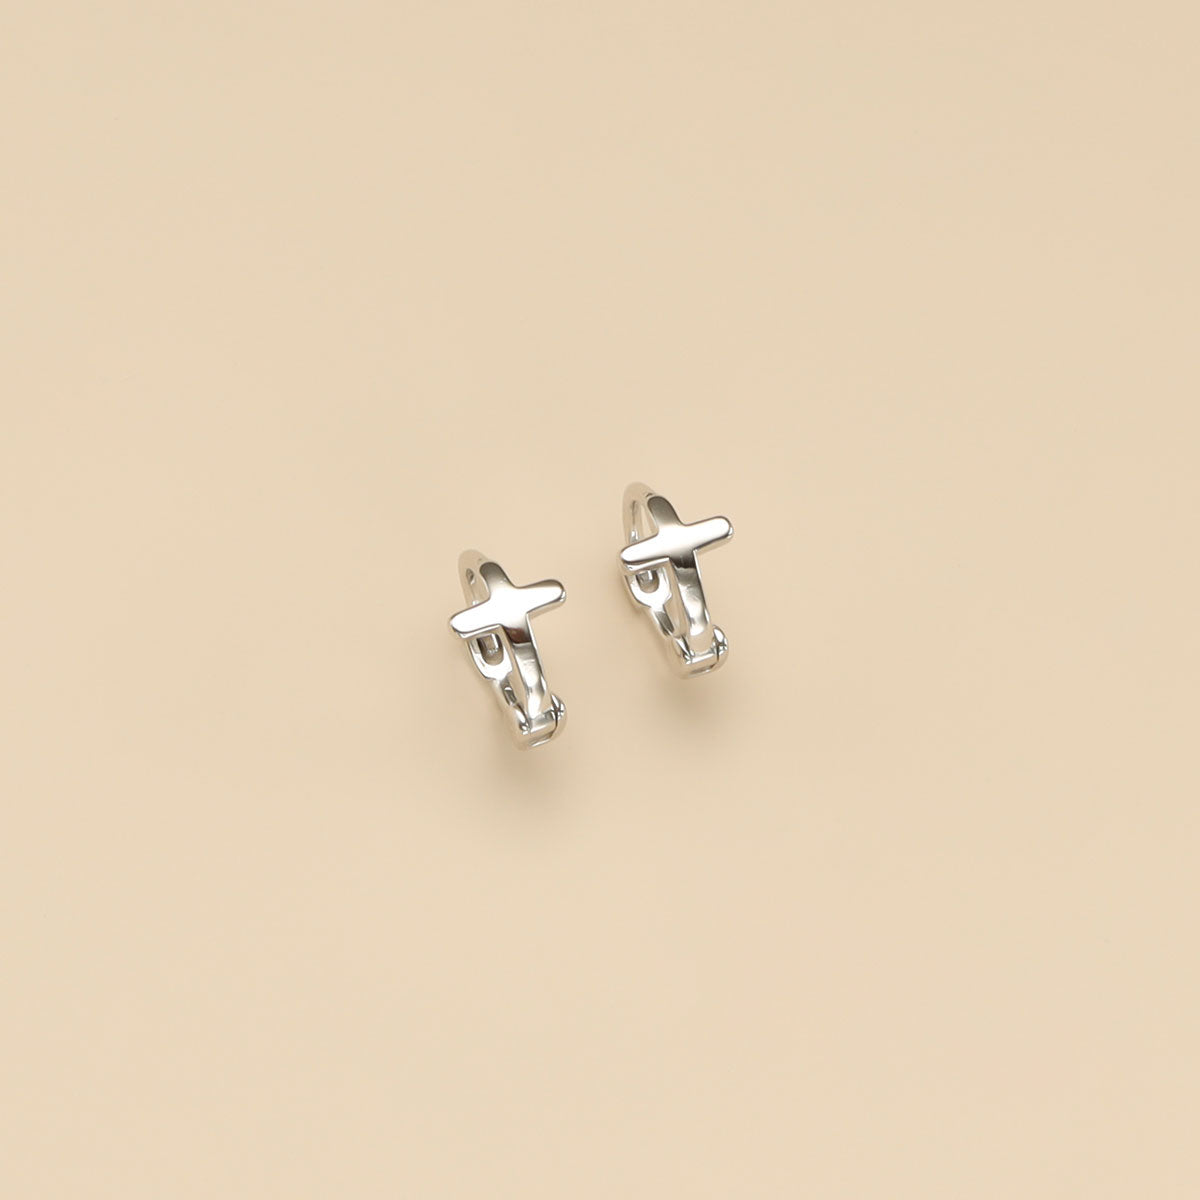 A pair of silver huggie hoop earrings.